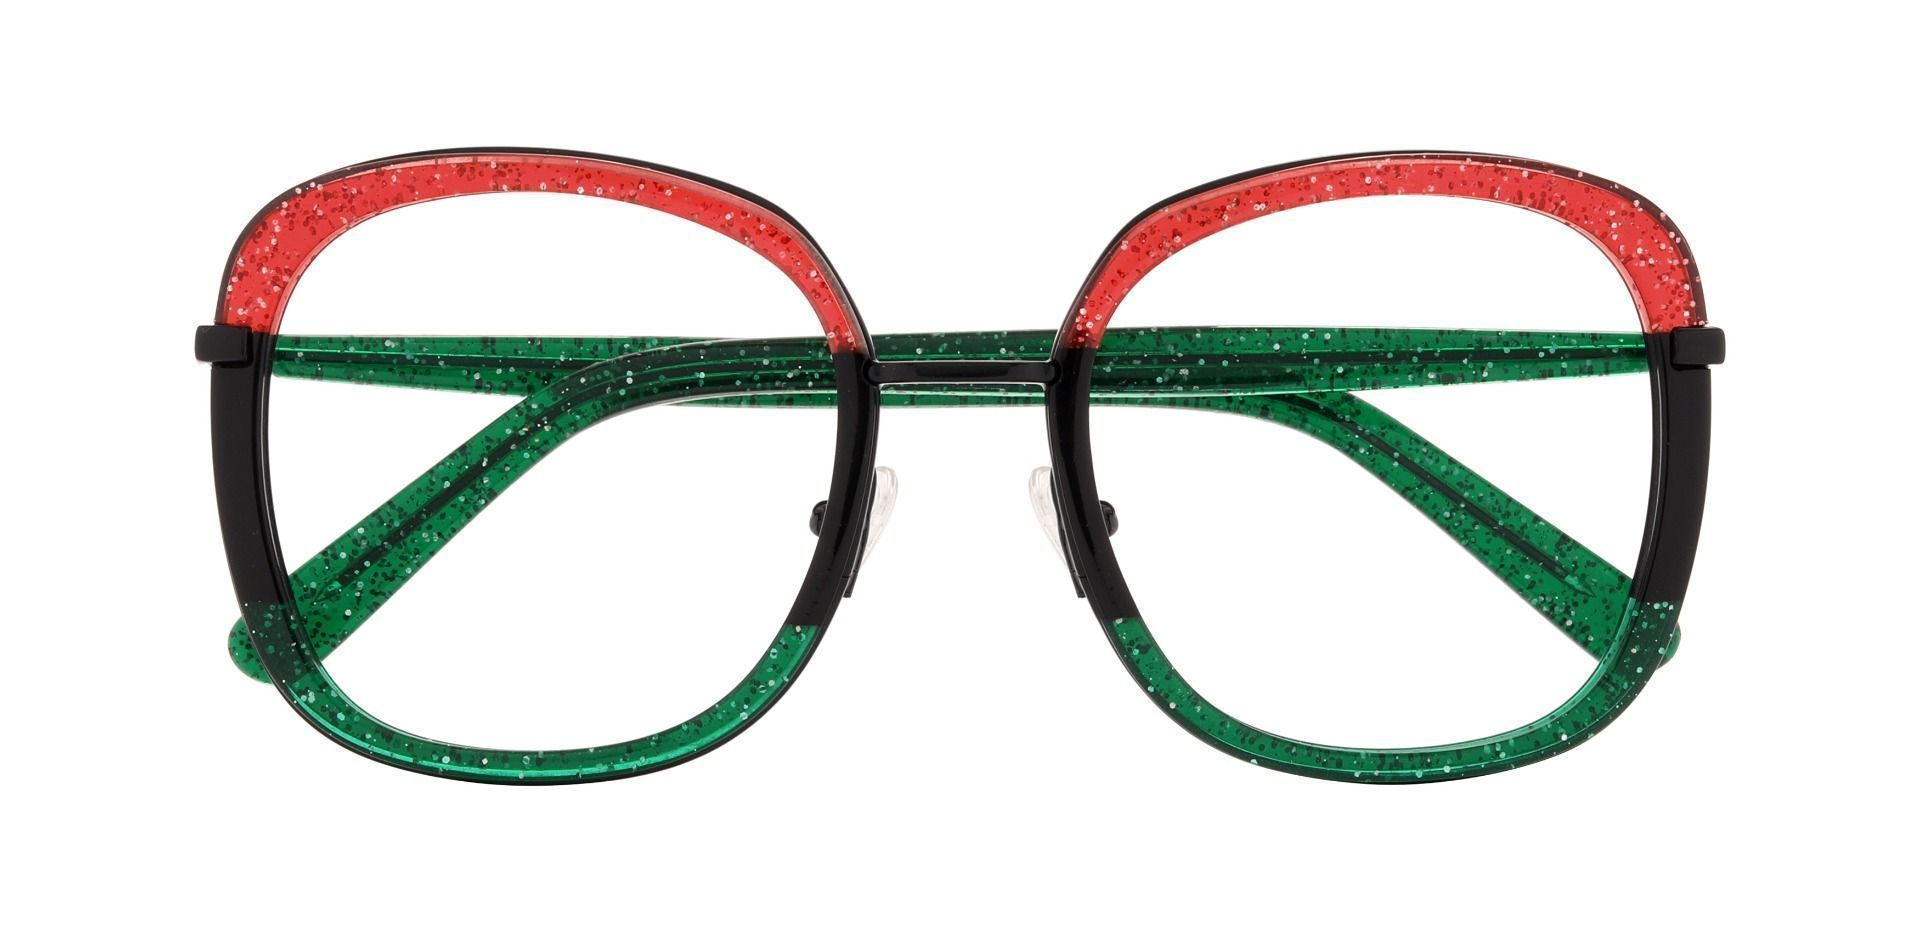 Valley Geometric Prescription Glasses - Two